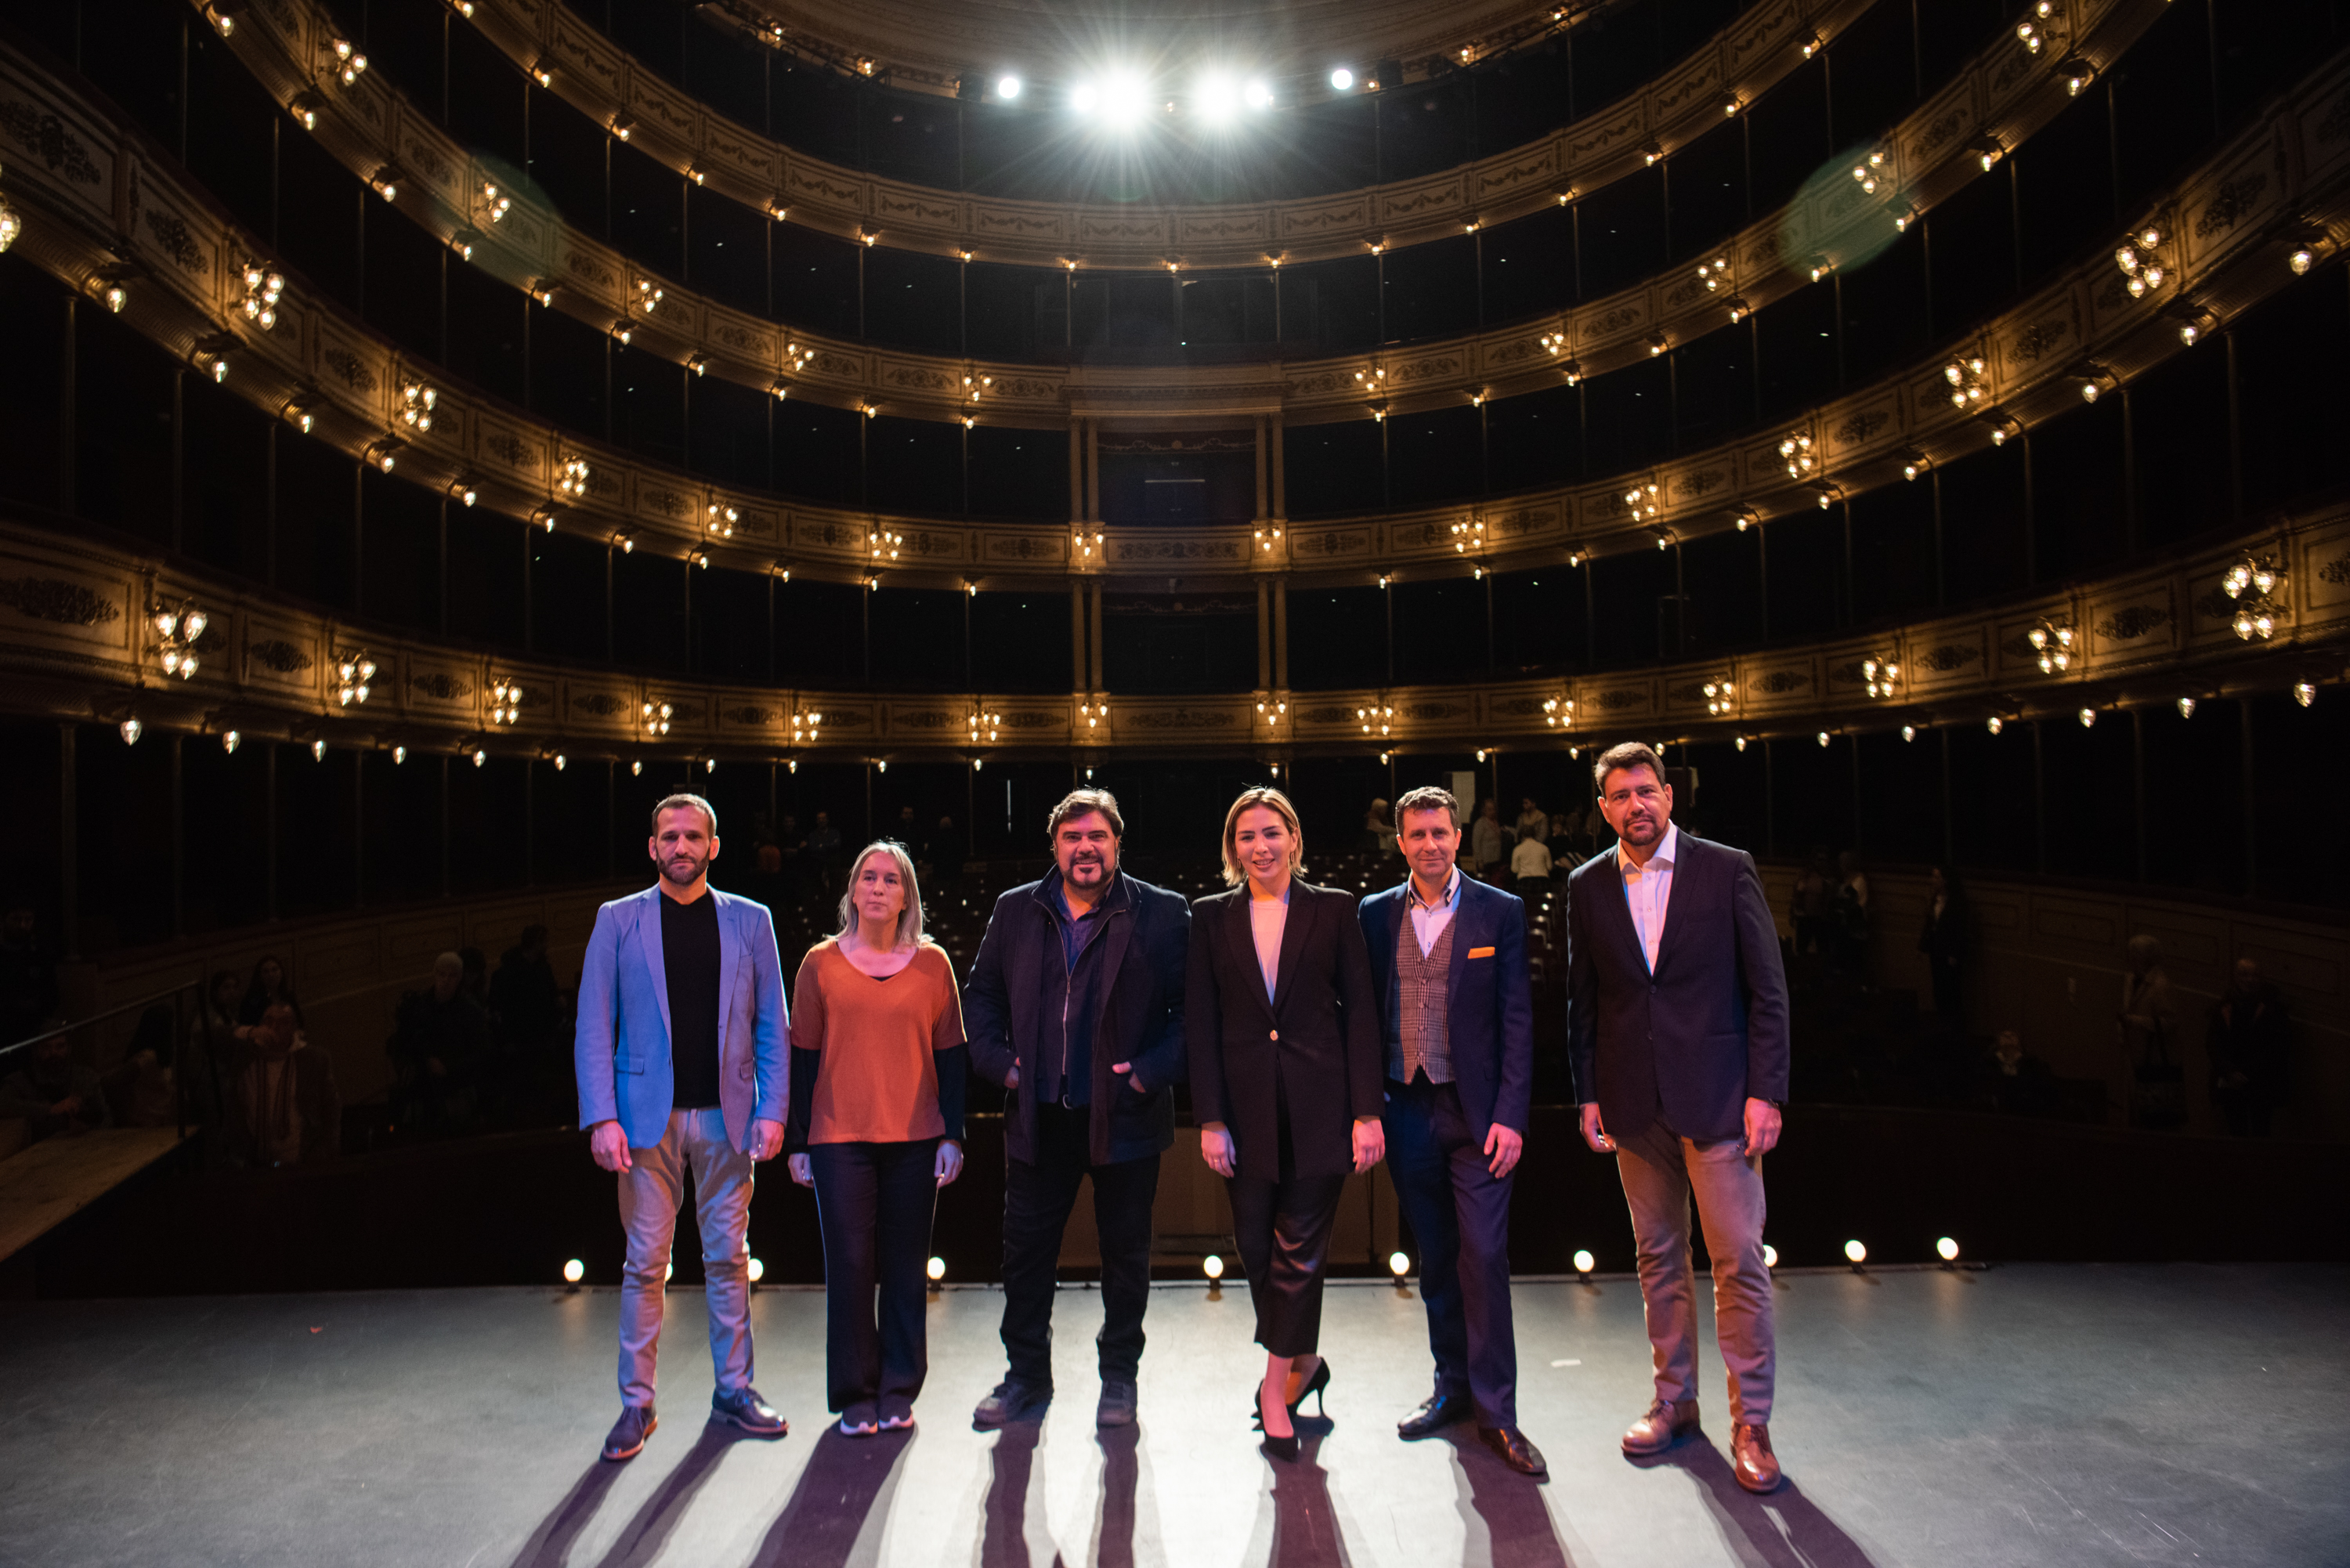 Presentación de ópera Pagliacci en el teatro Solís, 11 de agosto de 2022